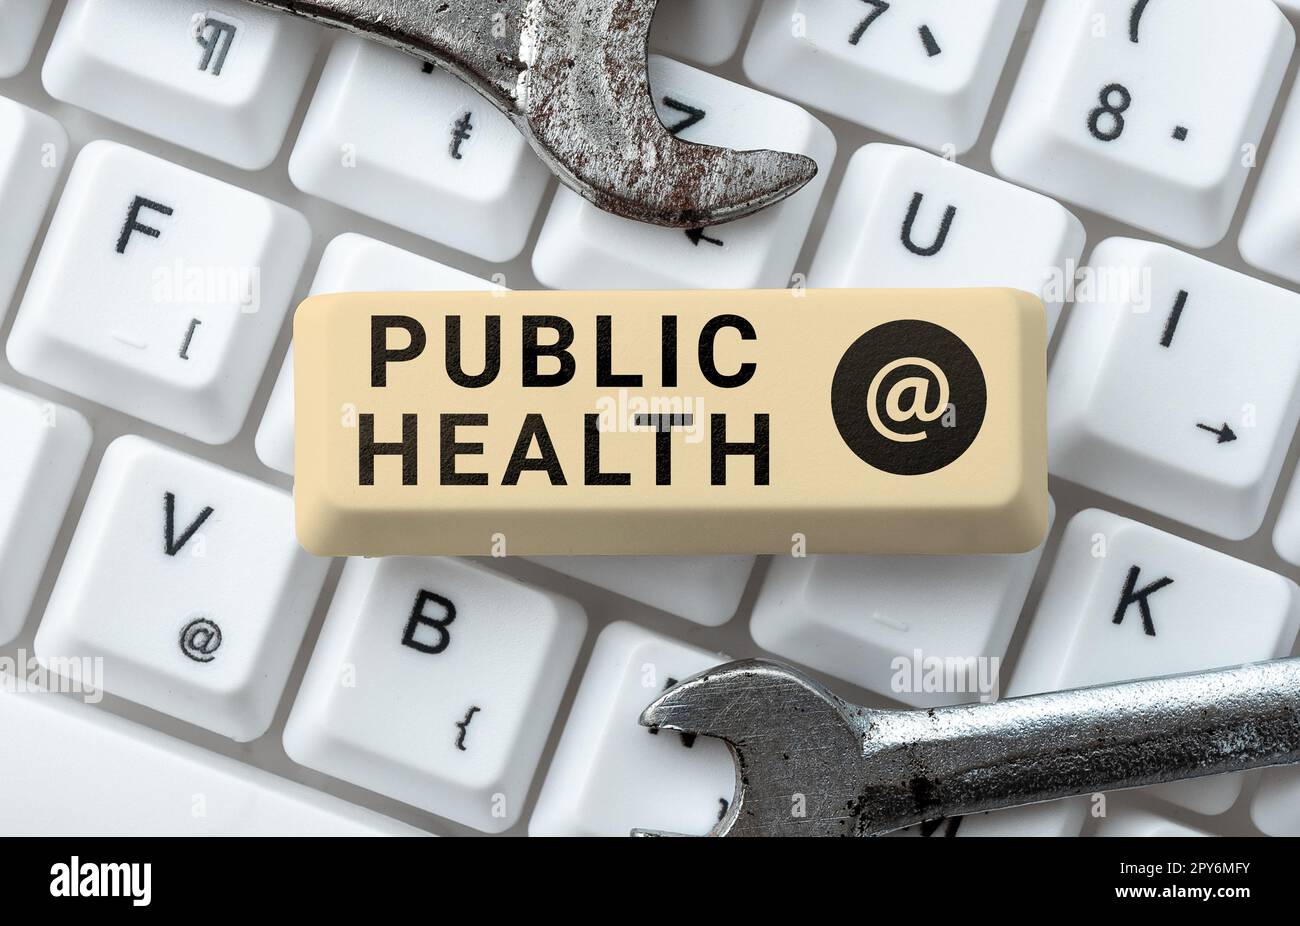 Textunterschrift präsentiert Public Health. Geschäftsidee zur Förderung eines gesunden Lebensstils für die Gemeinschaft und ihre Menschen Stockfoto